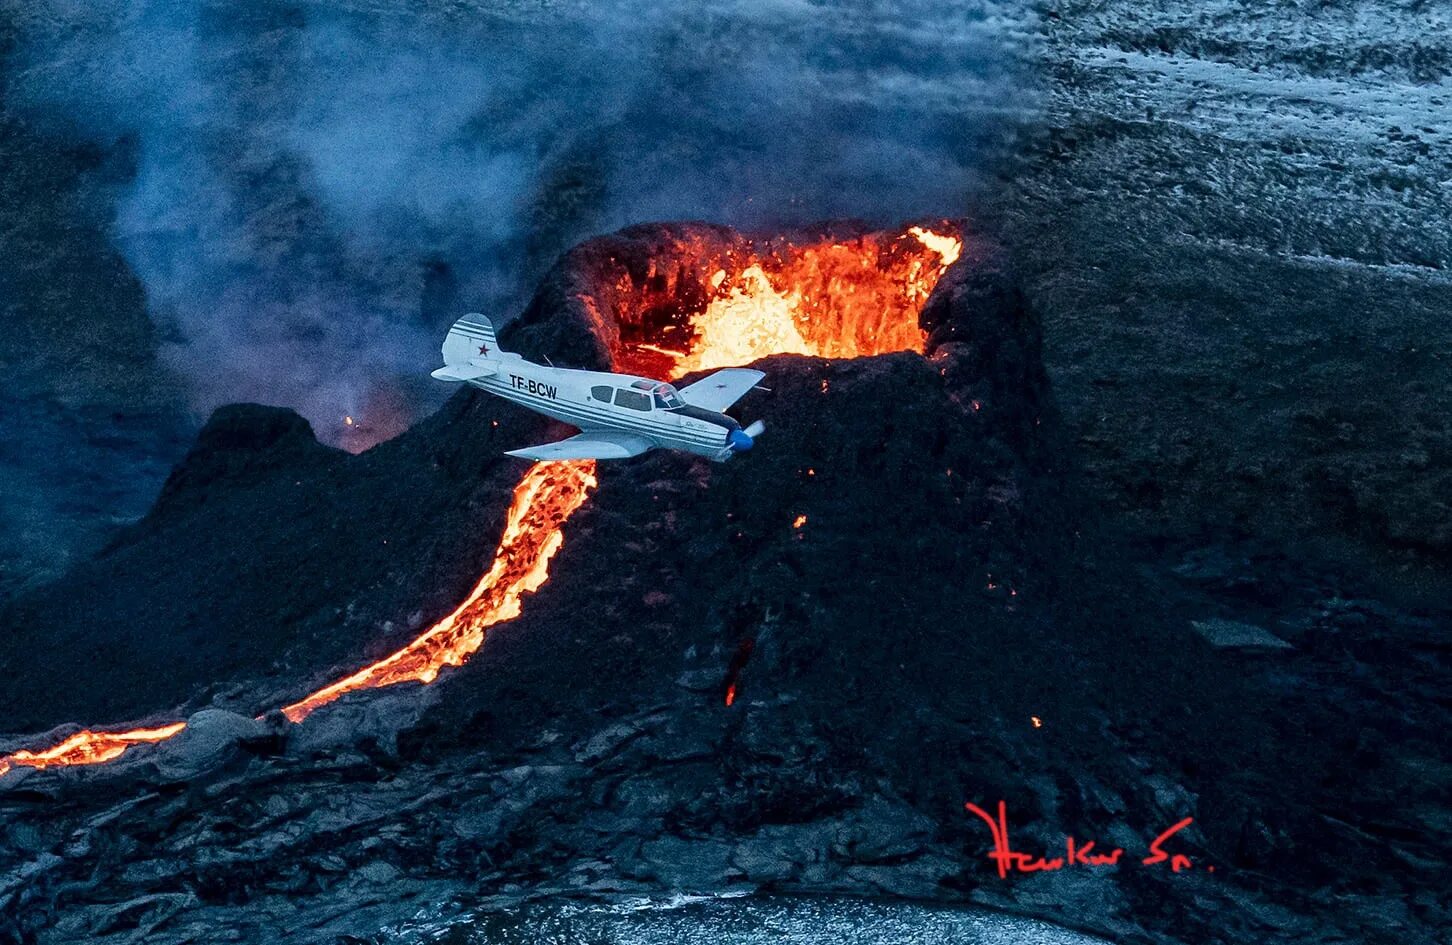 Извержение вулкана Тонга. Извержение вулкана Тонга 2022. Извержение вулкана Уайт Айленд 2019. Вулкан эйяфьядлайёкюдль. Сильные землетрясения извержения вулканов мощные гейзеры